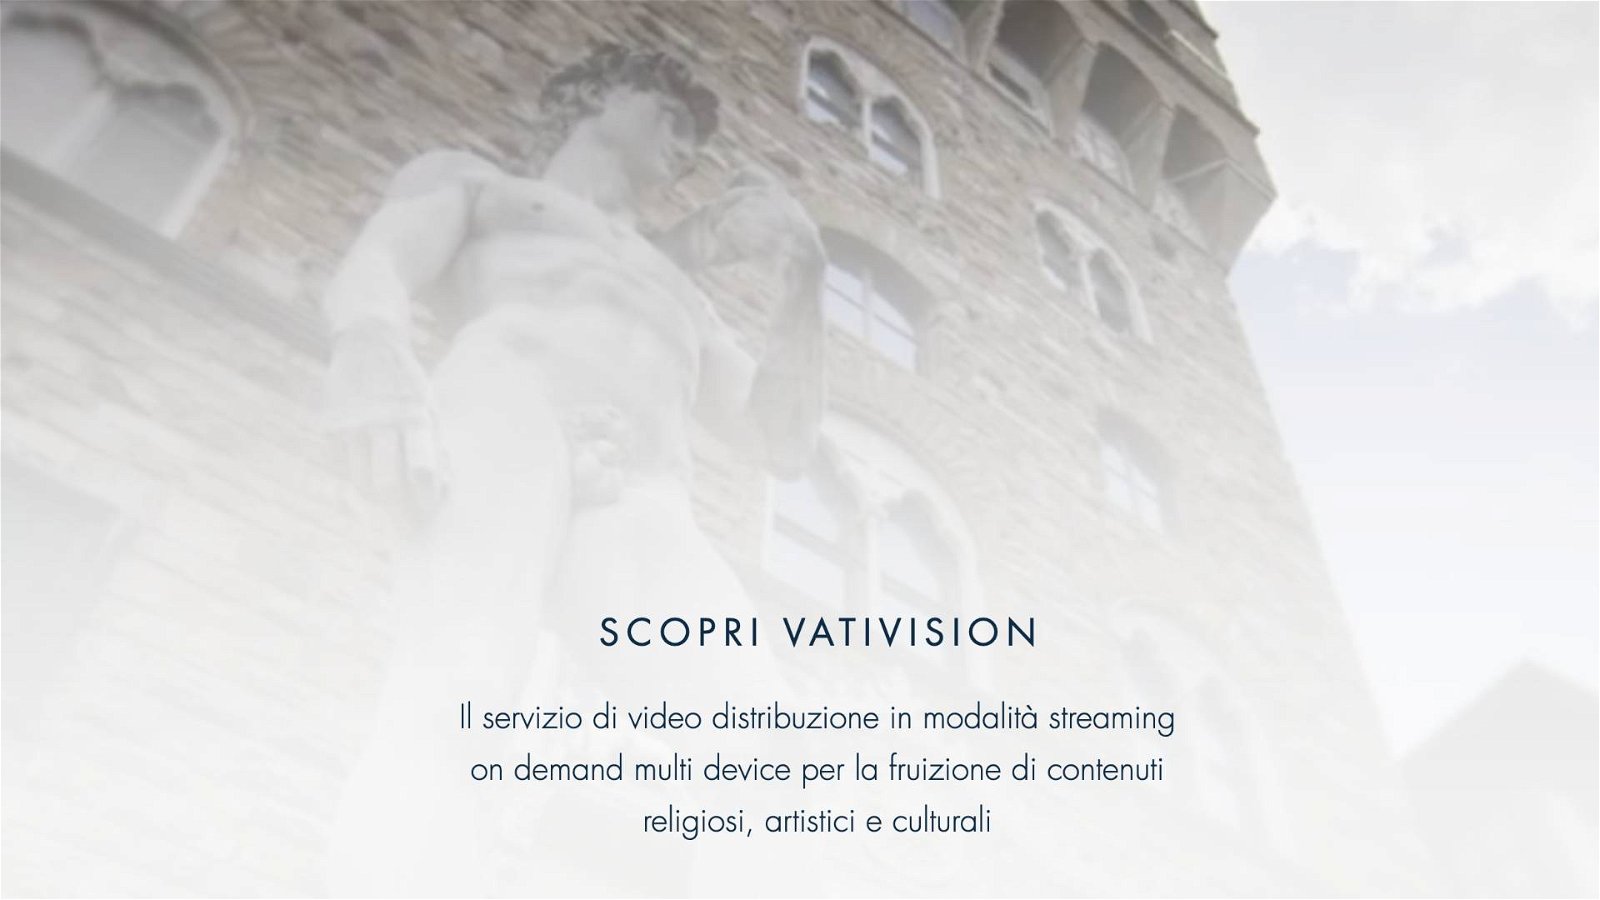 Immagine di VatiVision, dal 2020 una piattaforma streaming dedicata all'arte e al messaggio cristiano